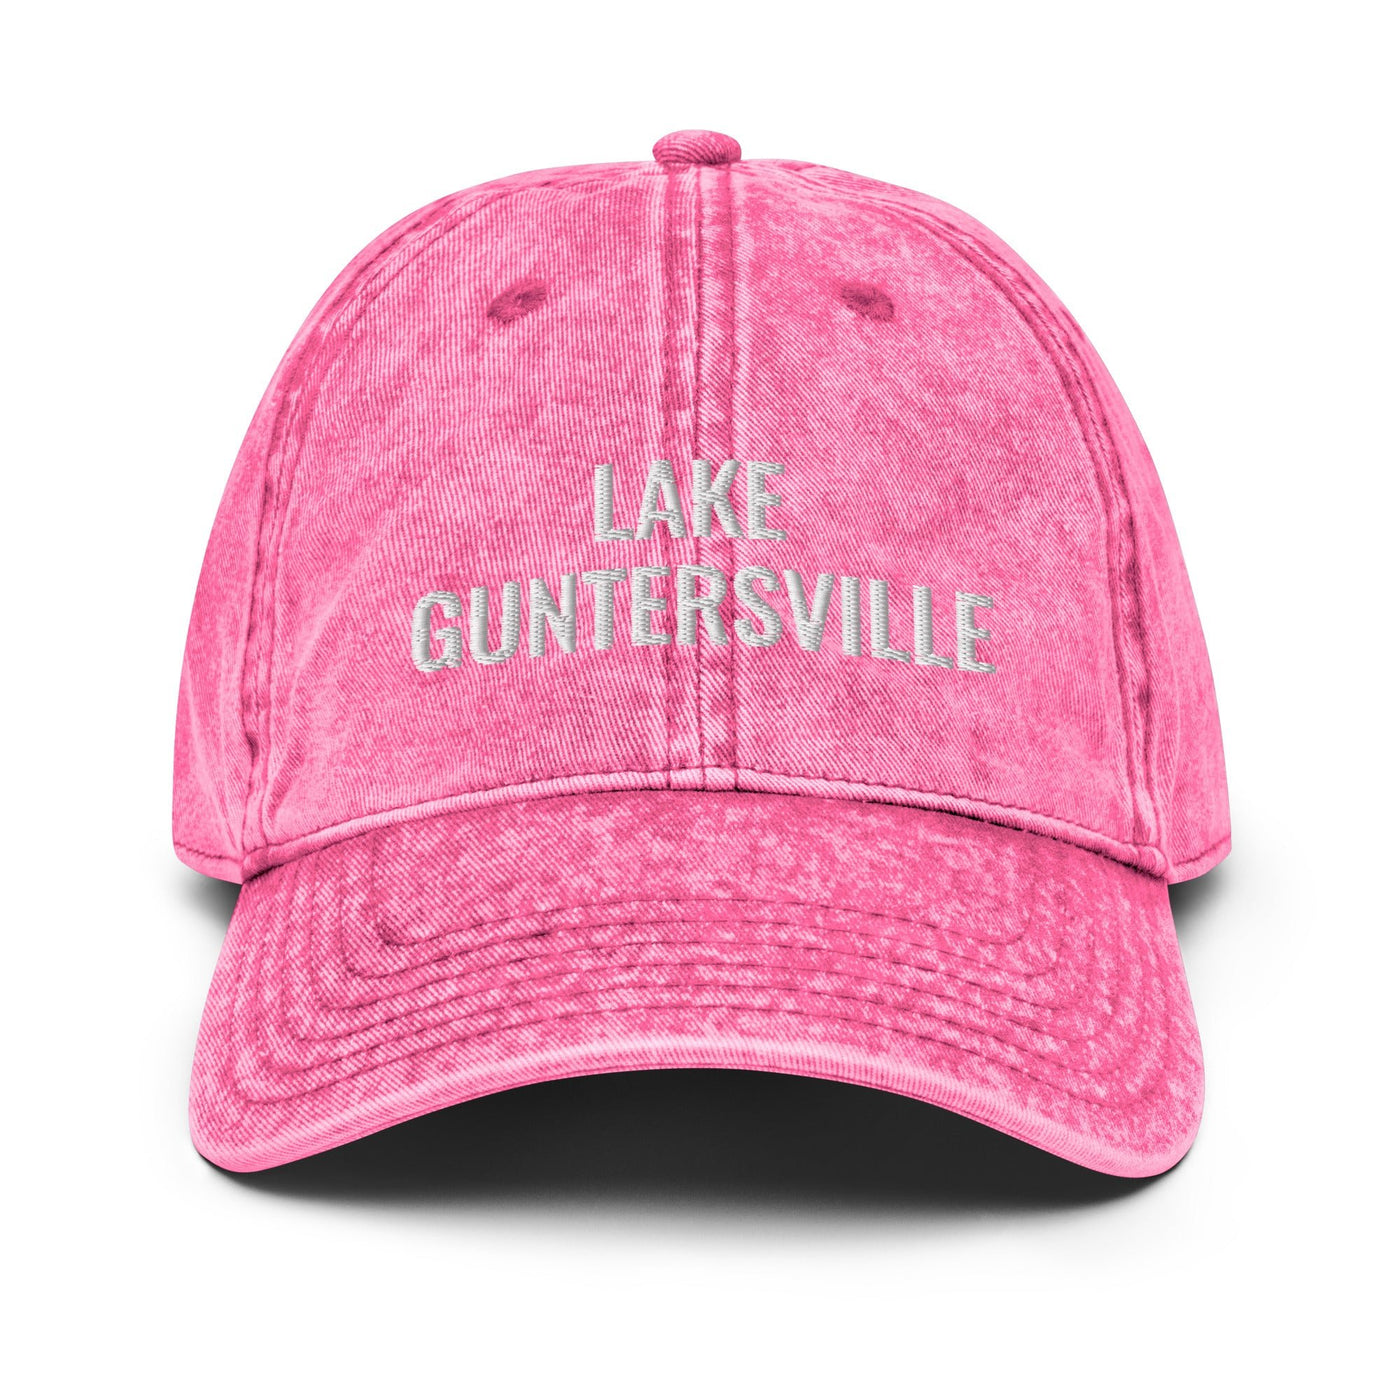 Lake Guntersville Hat - Ezra's Clothing